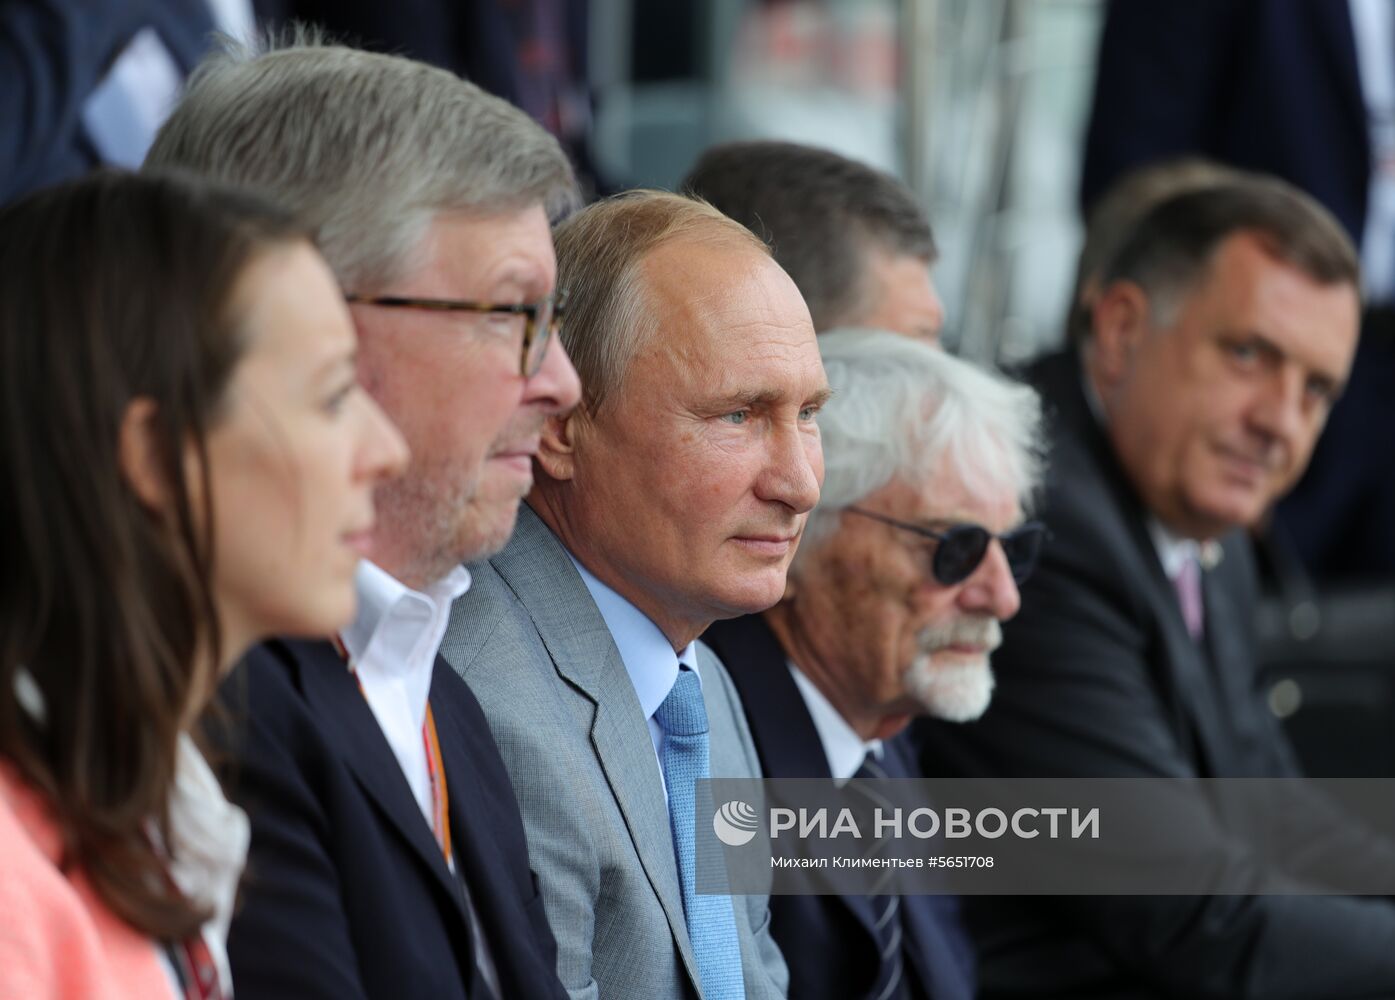 Президент РФ В. Путин посетил гонки чемпионата мира "Формула-1" в Сочи